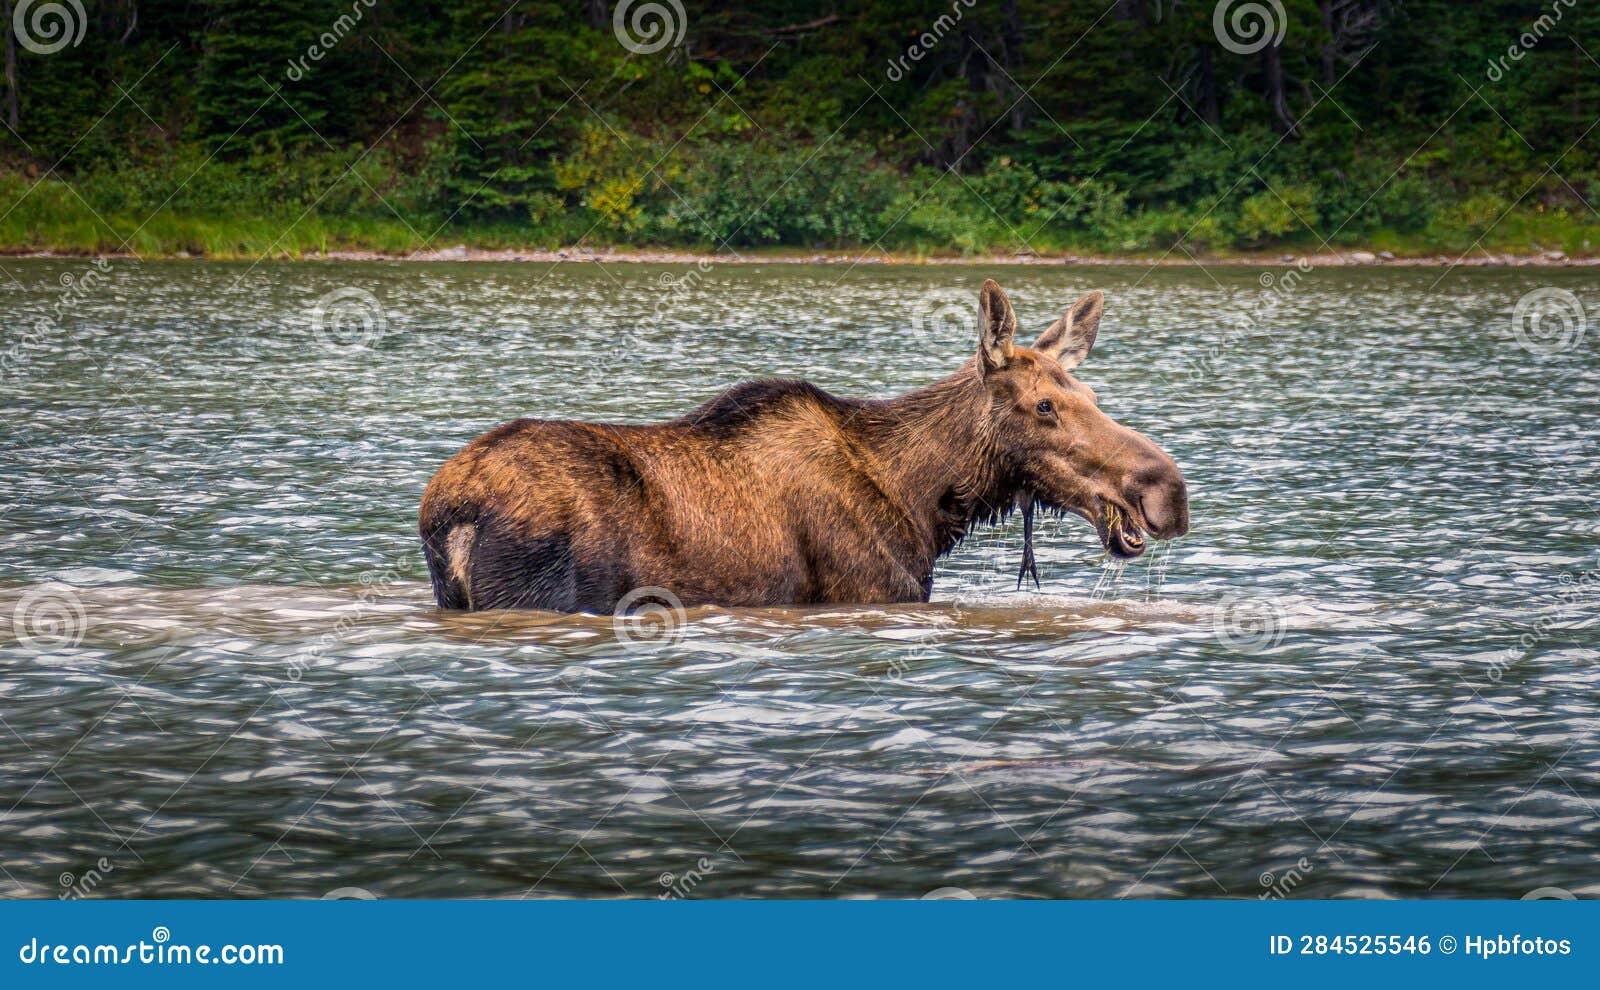 moose cow in fishercap lake in glacier national park